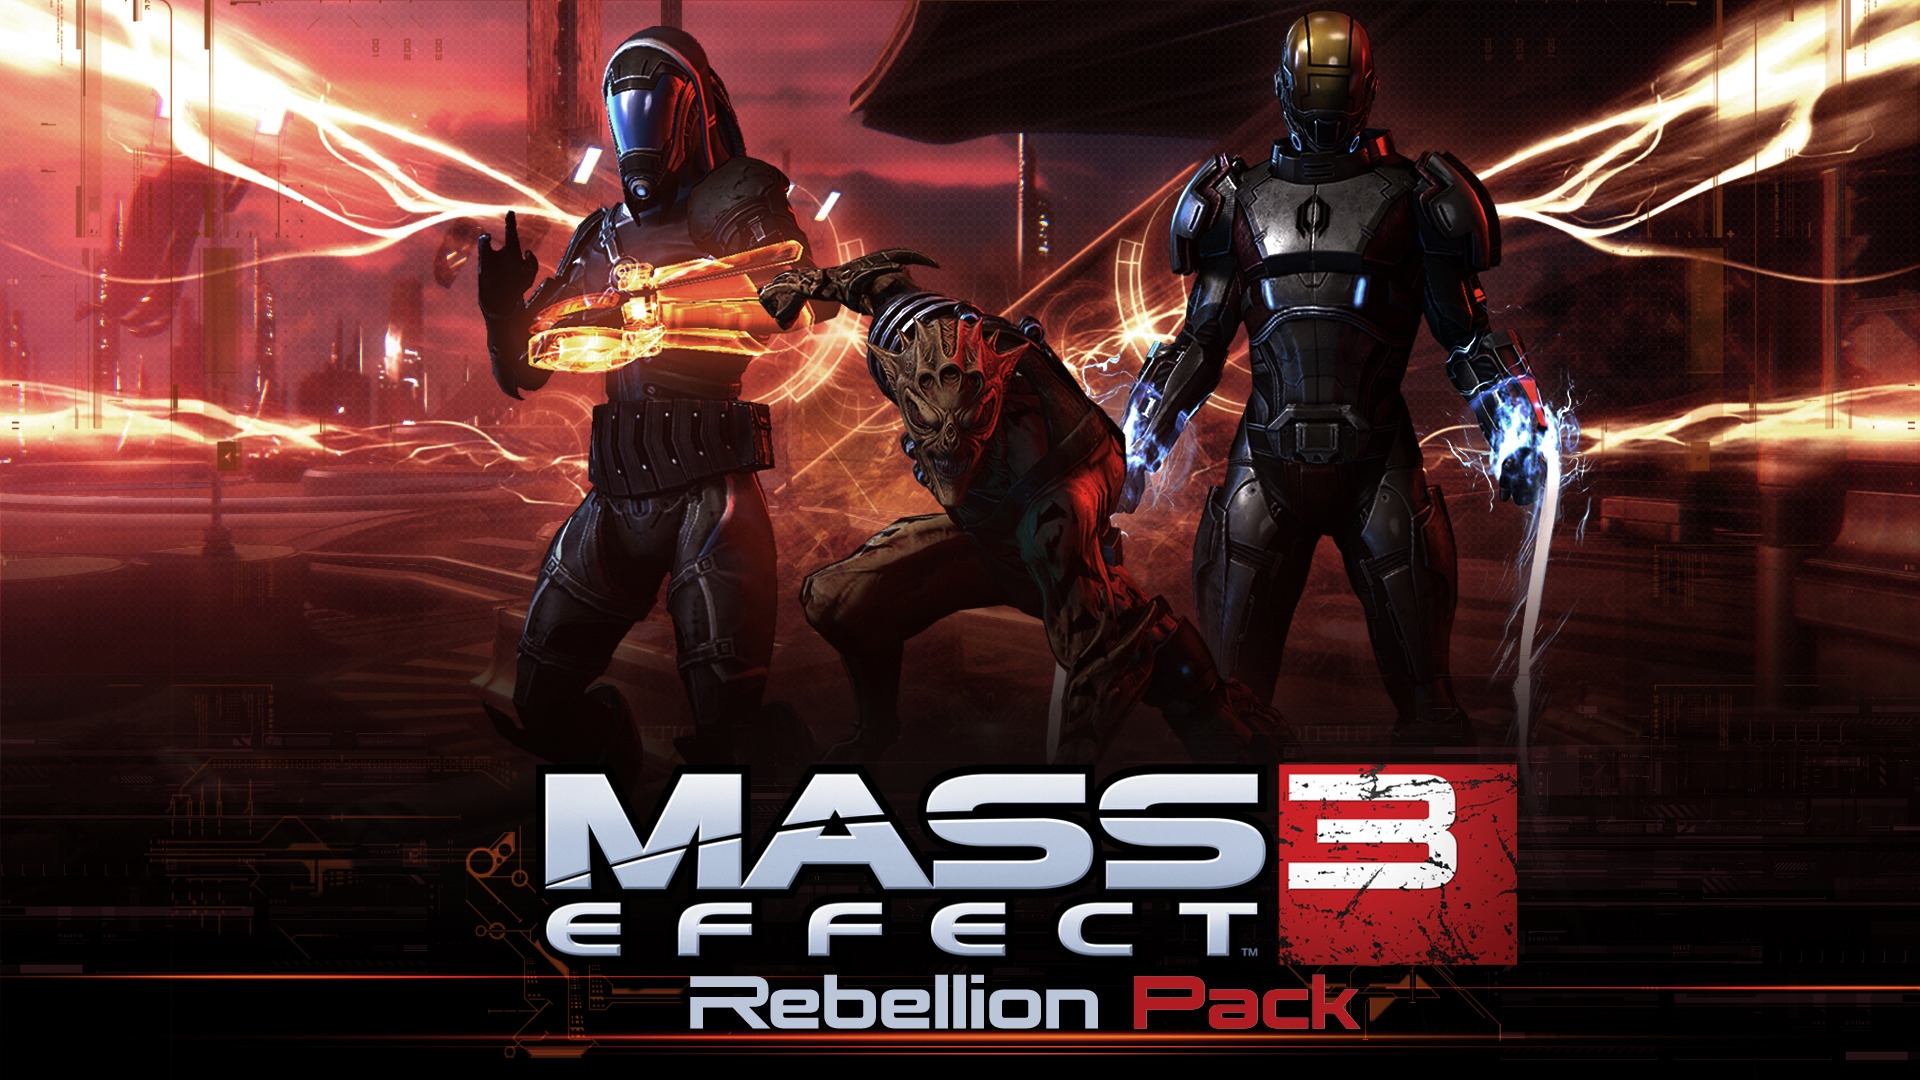 Mass Effect 3 Rebellion Pack for 1920 x 1080 HDTV 1080p resolution